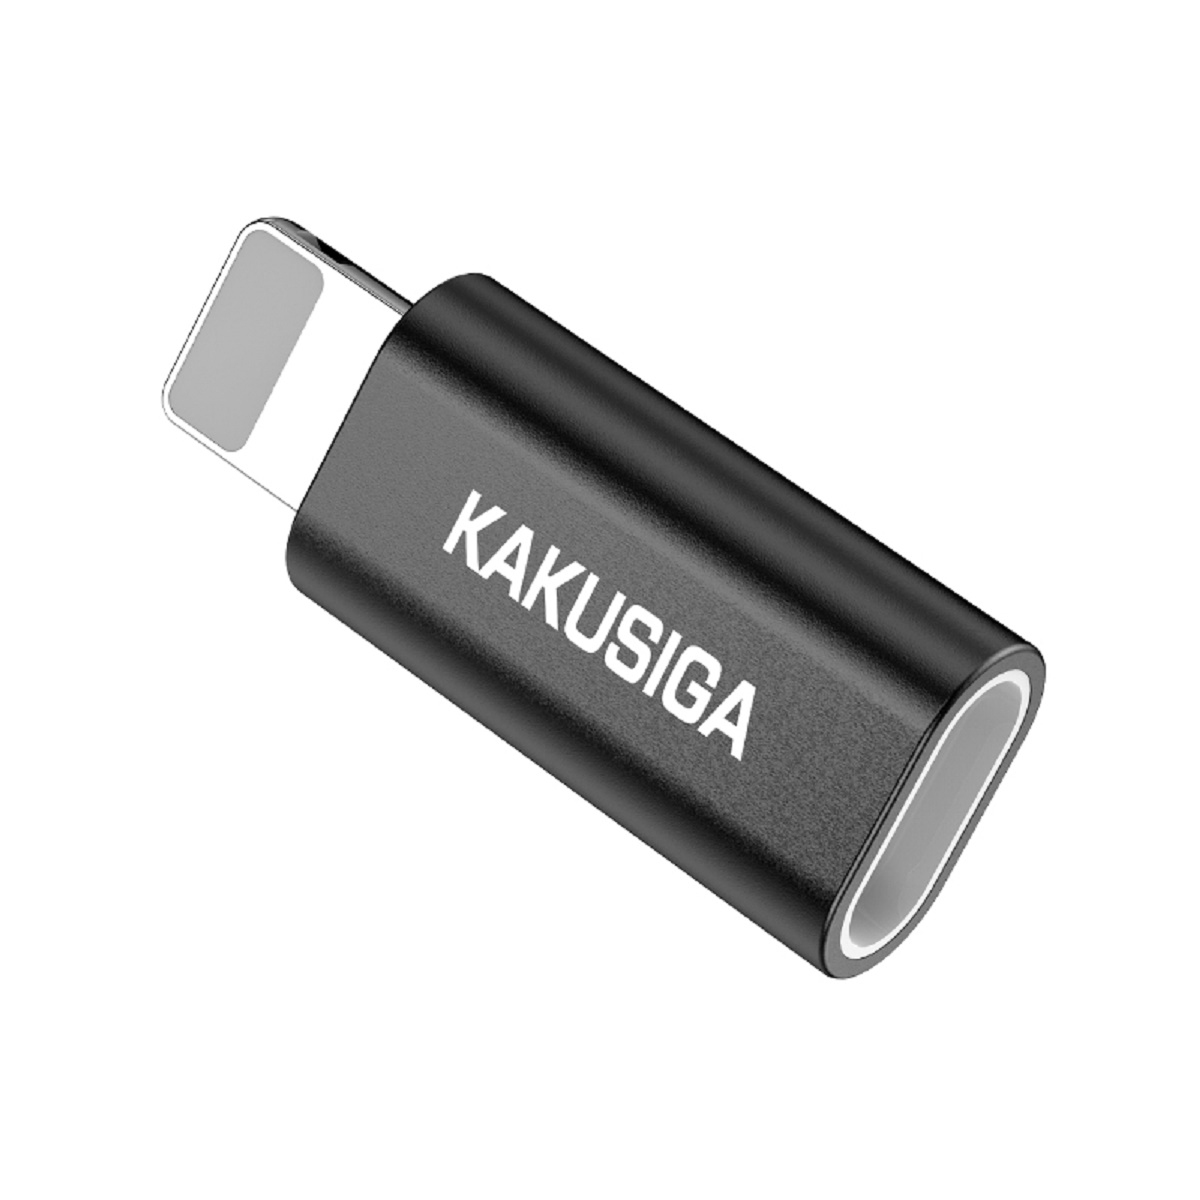 Kabel-Adapter auf USB Chenxing - Micro Schwarz KSC-559 Adapter KAKU KAKU iPhone-Anschluss Schwarz Adapter,